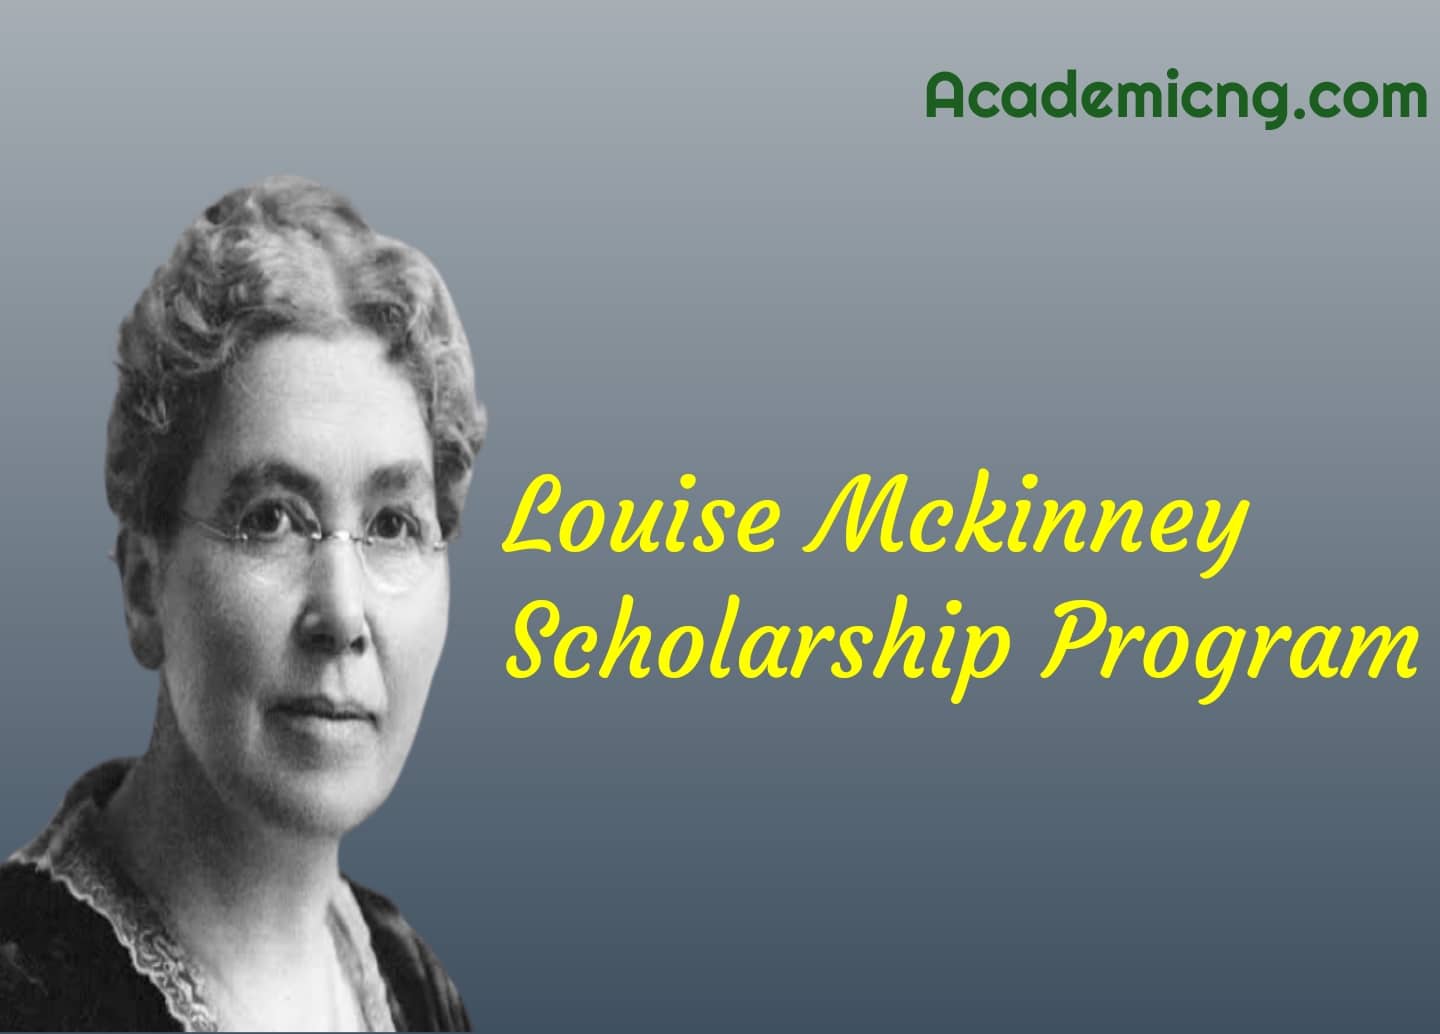 Louise Mckinney Scholarship